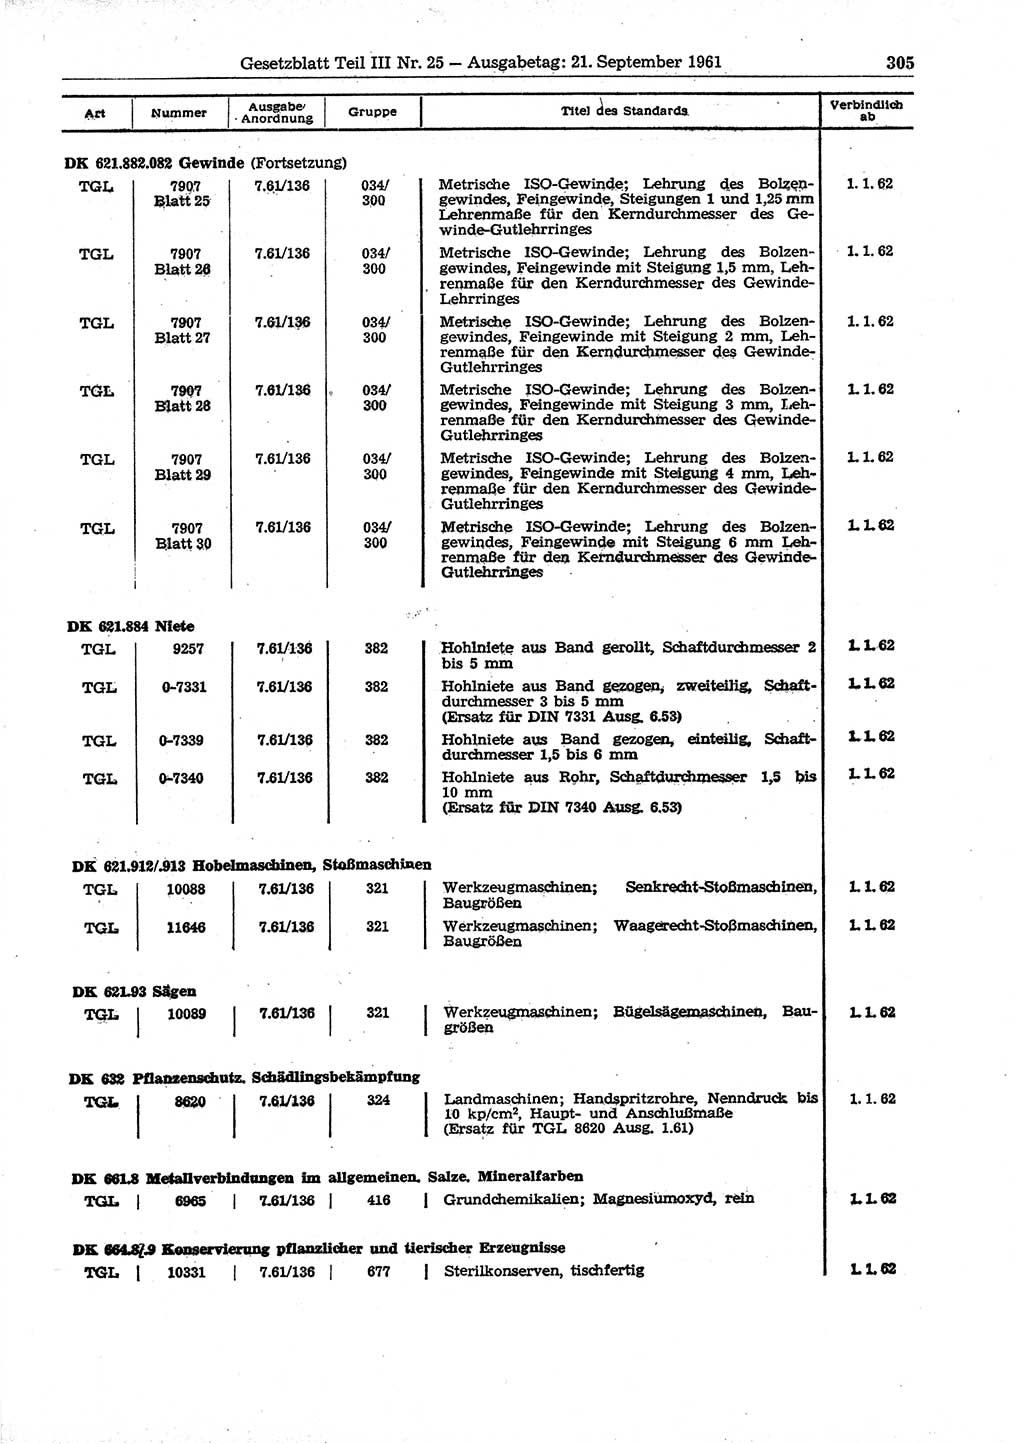 Gesetzblatt (GBl.) der Deutschen Demokratischen Republik (DDR) Teil ⅠⅠⅠ 1961, Seite 305 (GBl. DDR ⅠⅠⅠ 1961, S. 305)